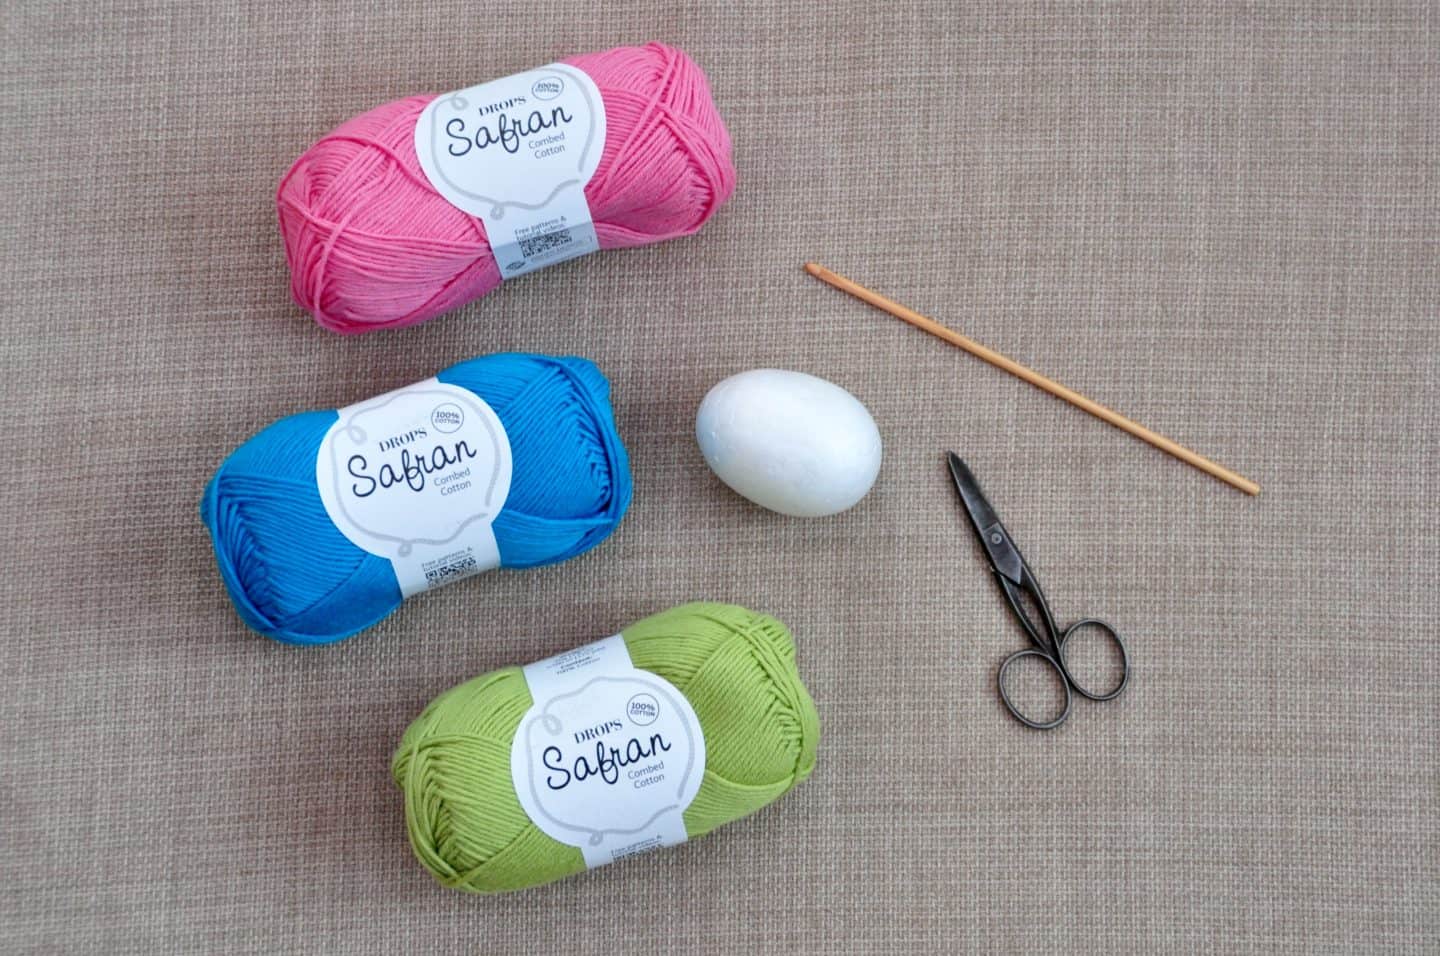 yarn, crochet hook, scissors and polystyrene egg showing how to make crochet Easter egg